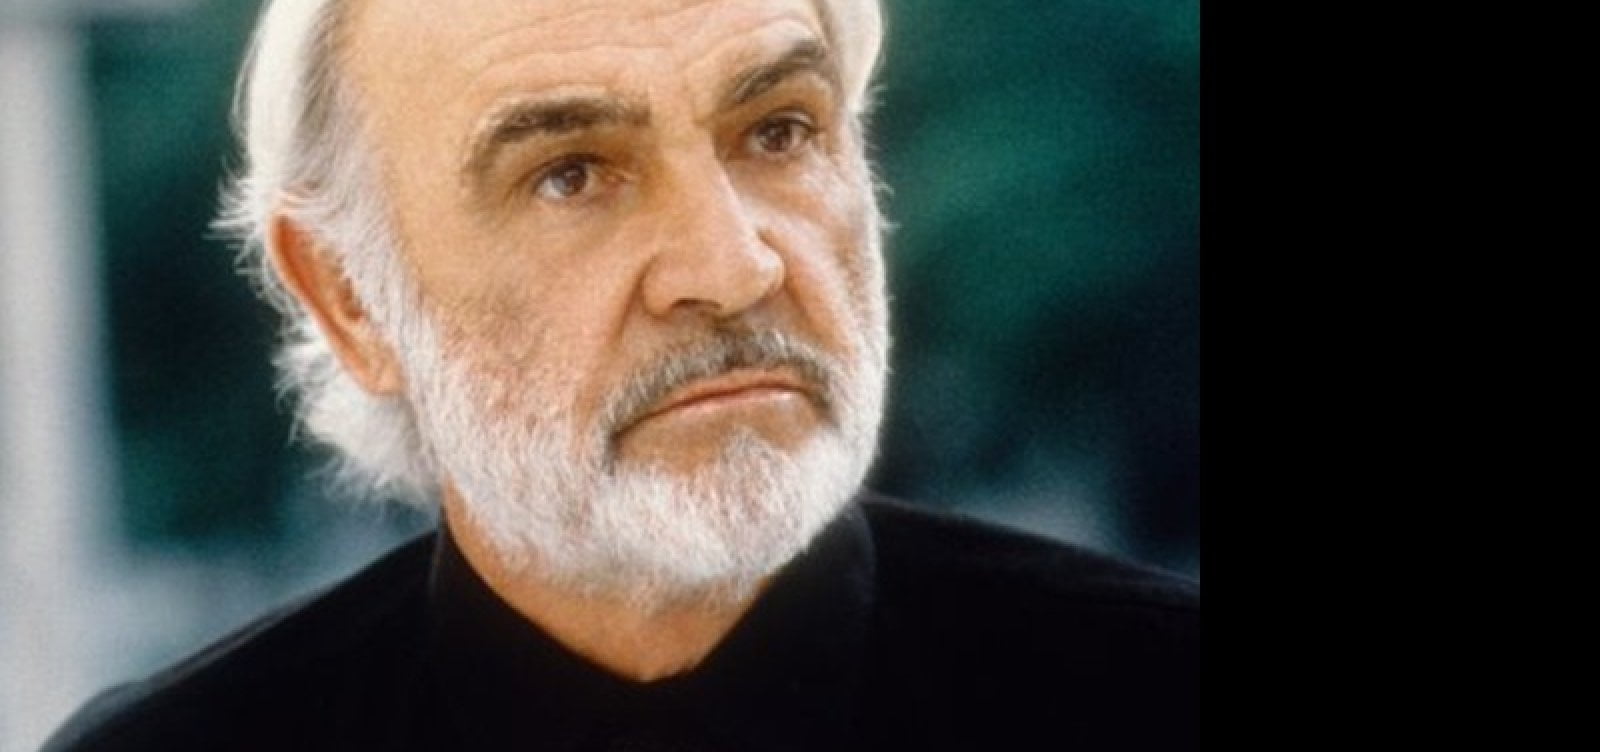 Famoso Por Interpretar James Bond, Ator Sean Connery Morre Aos 90 Anos